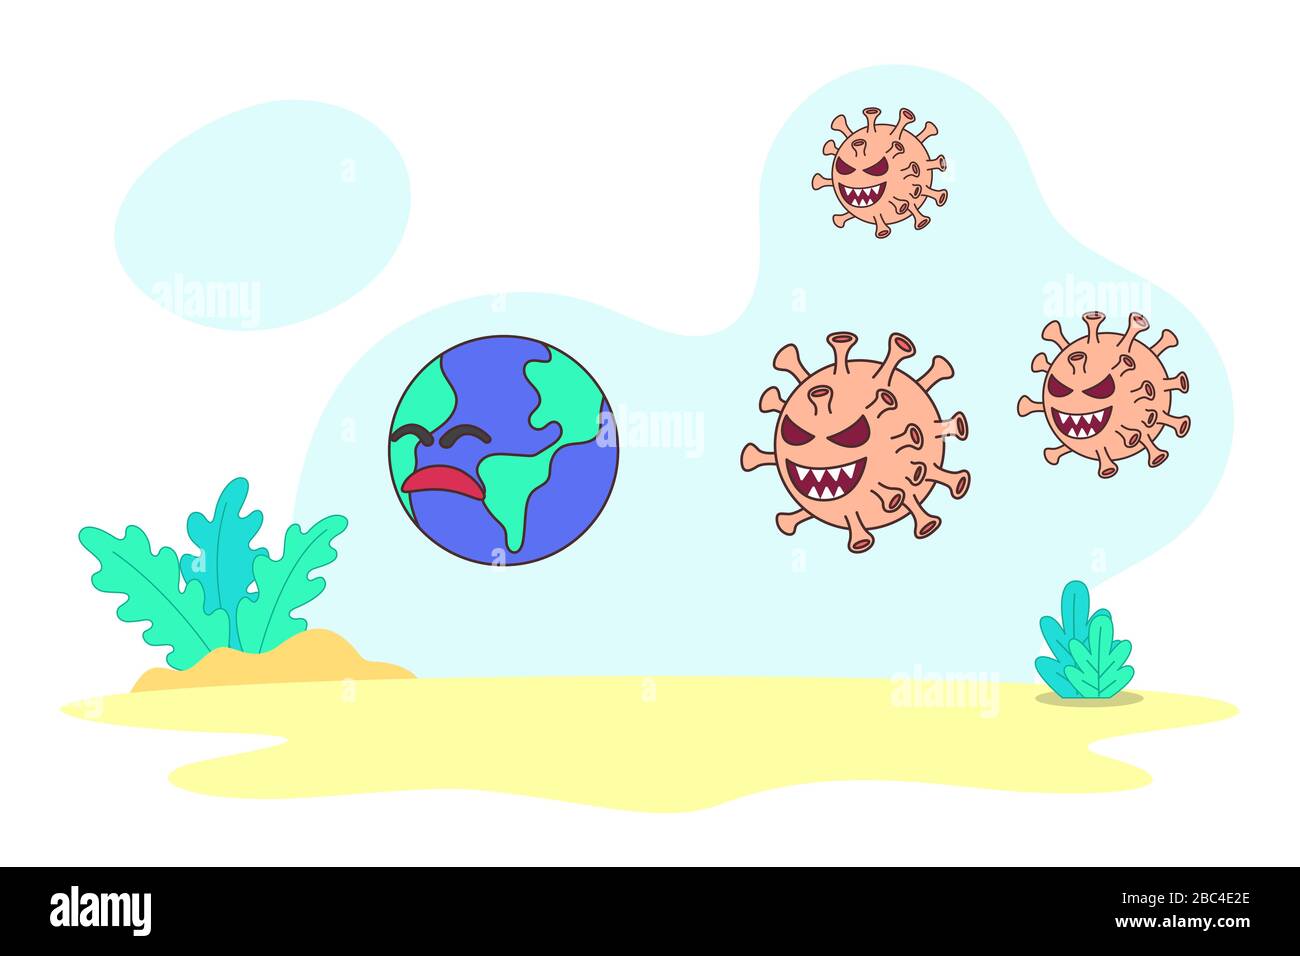 Immagine vettoriale il virus Corona attacca la terra. Il virus Corona sta inseguendo la terra come metafora del virus corona epidemico nel mondo. Illustrazione Vettoriale